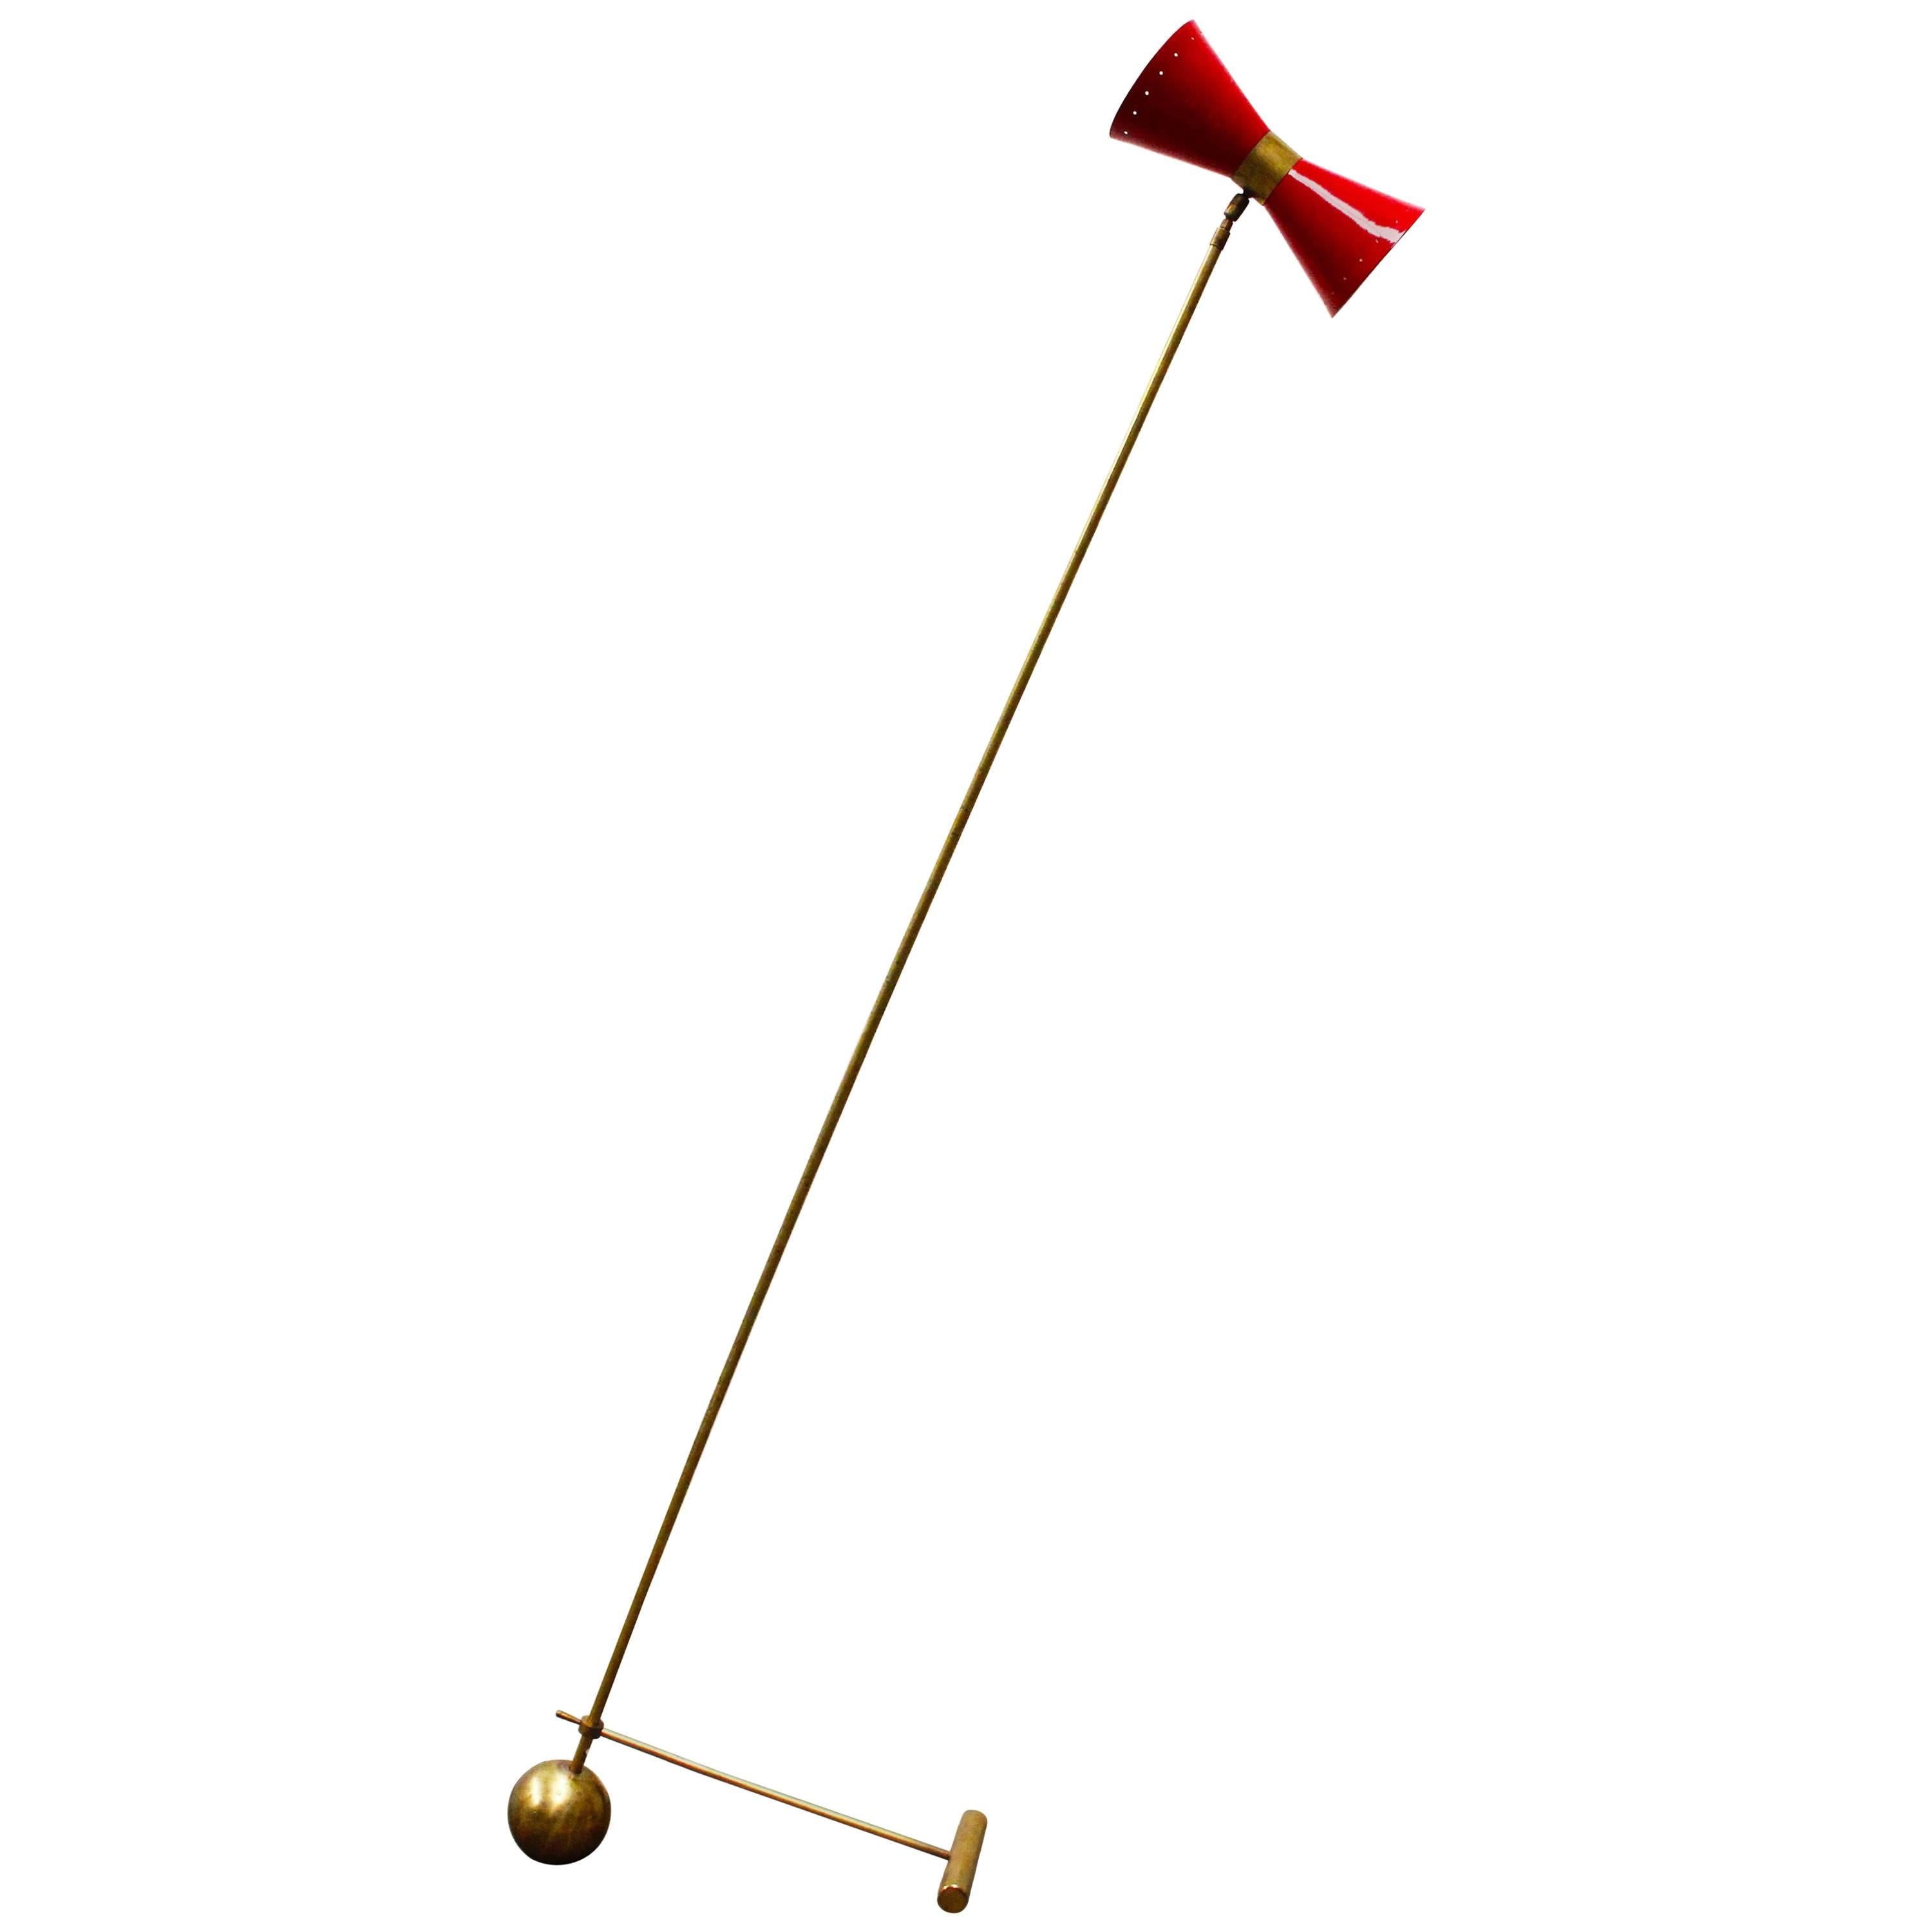 Midcentury Design Italian Brass Floor Lamp Style of 1950s Stilnovo, Gold Red